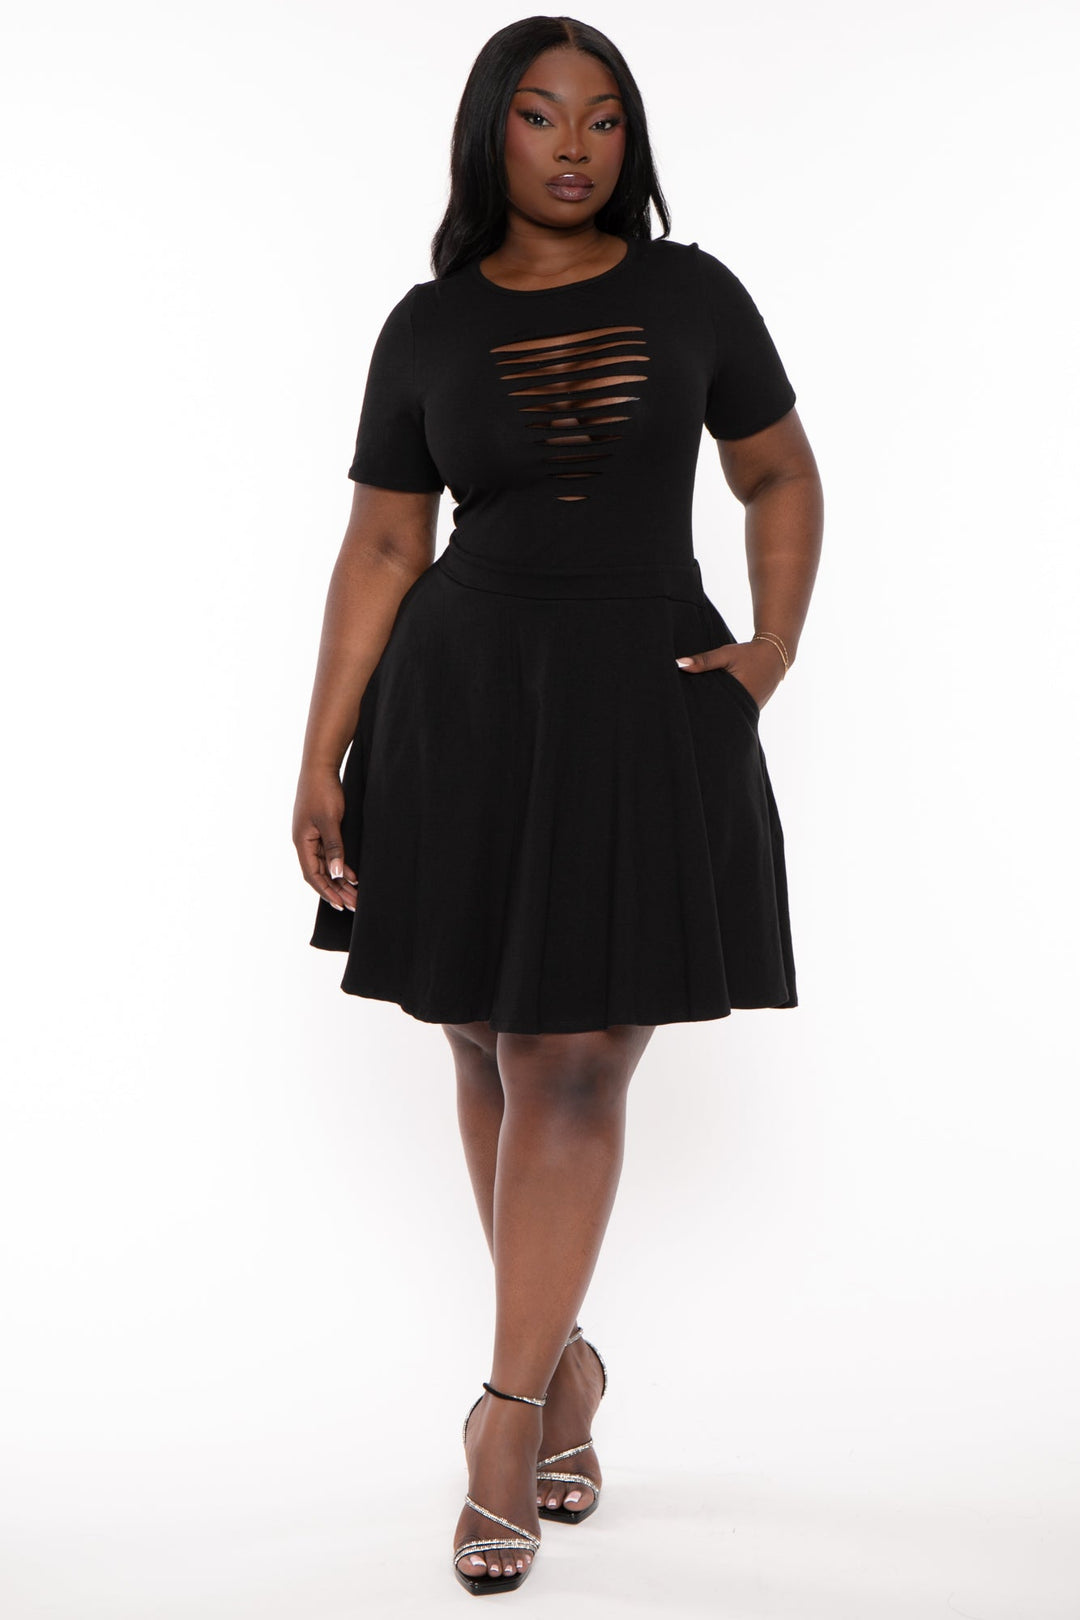 Plus Size Loxley Corset Lace Dress -Black